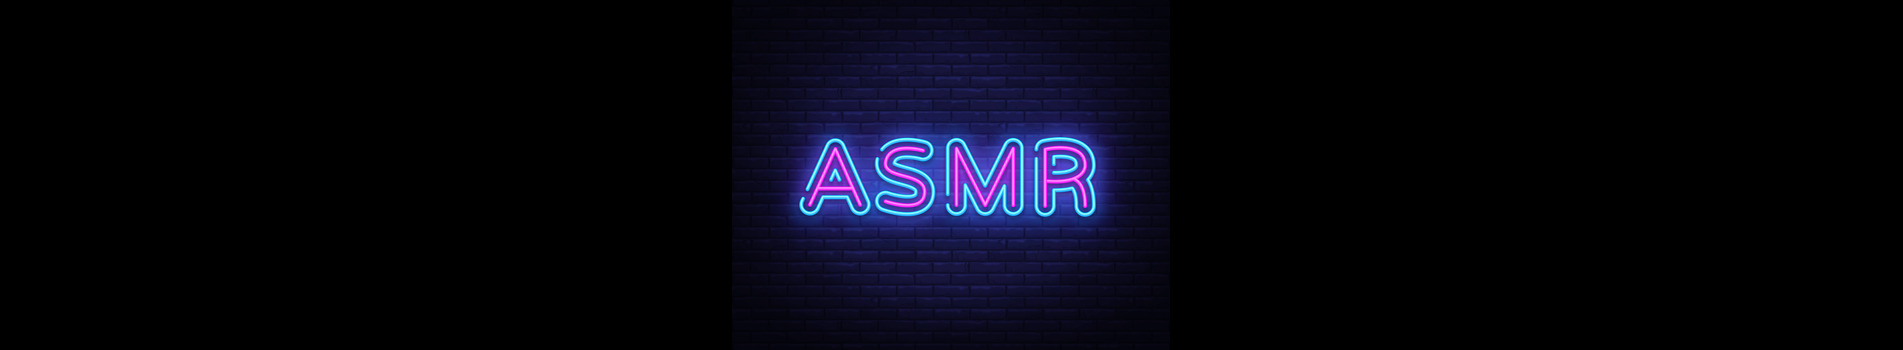 ASMR and Sleep